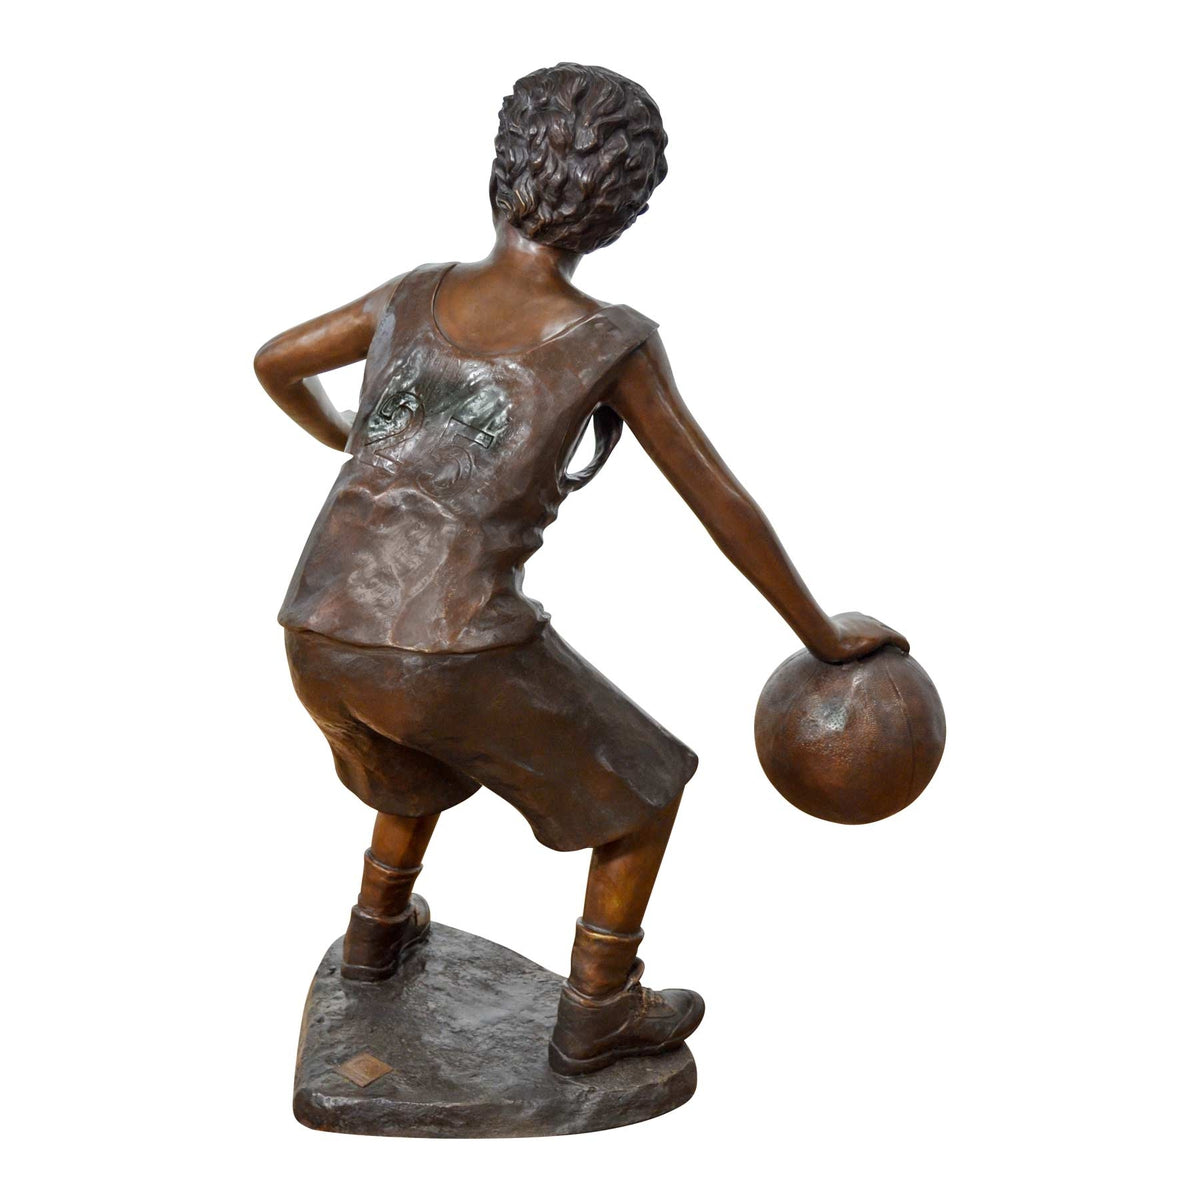 Boy Playing Basketball Sculpture